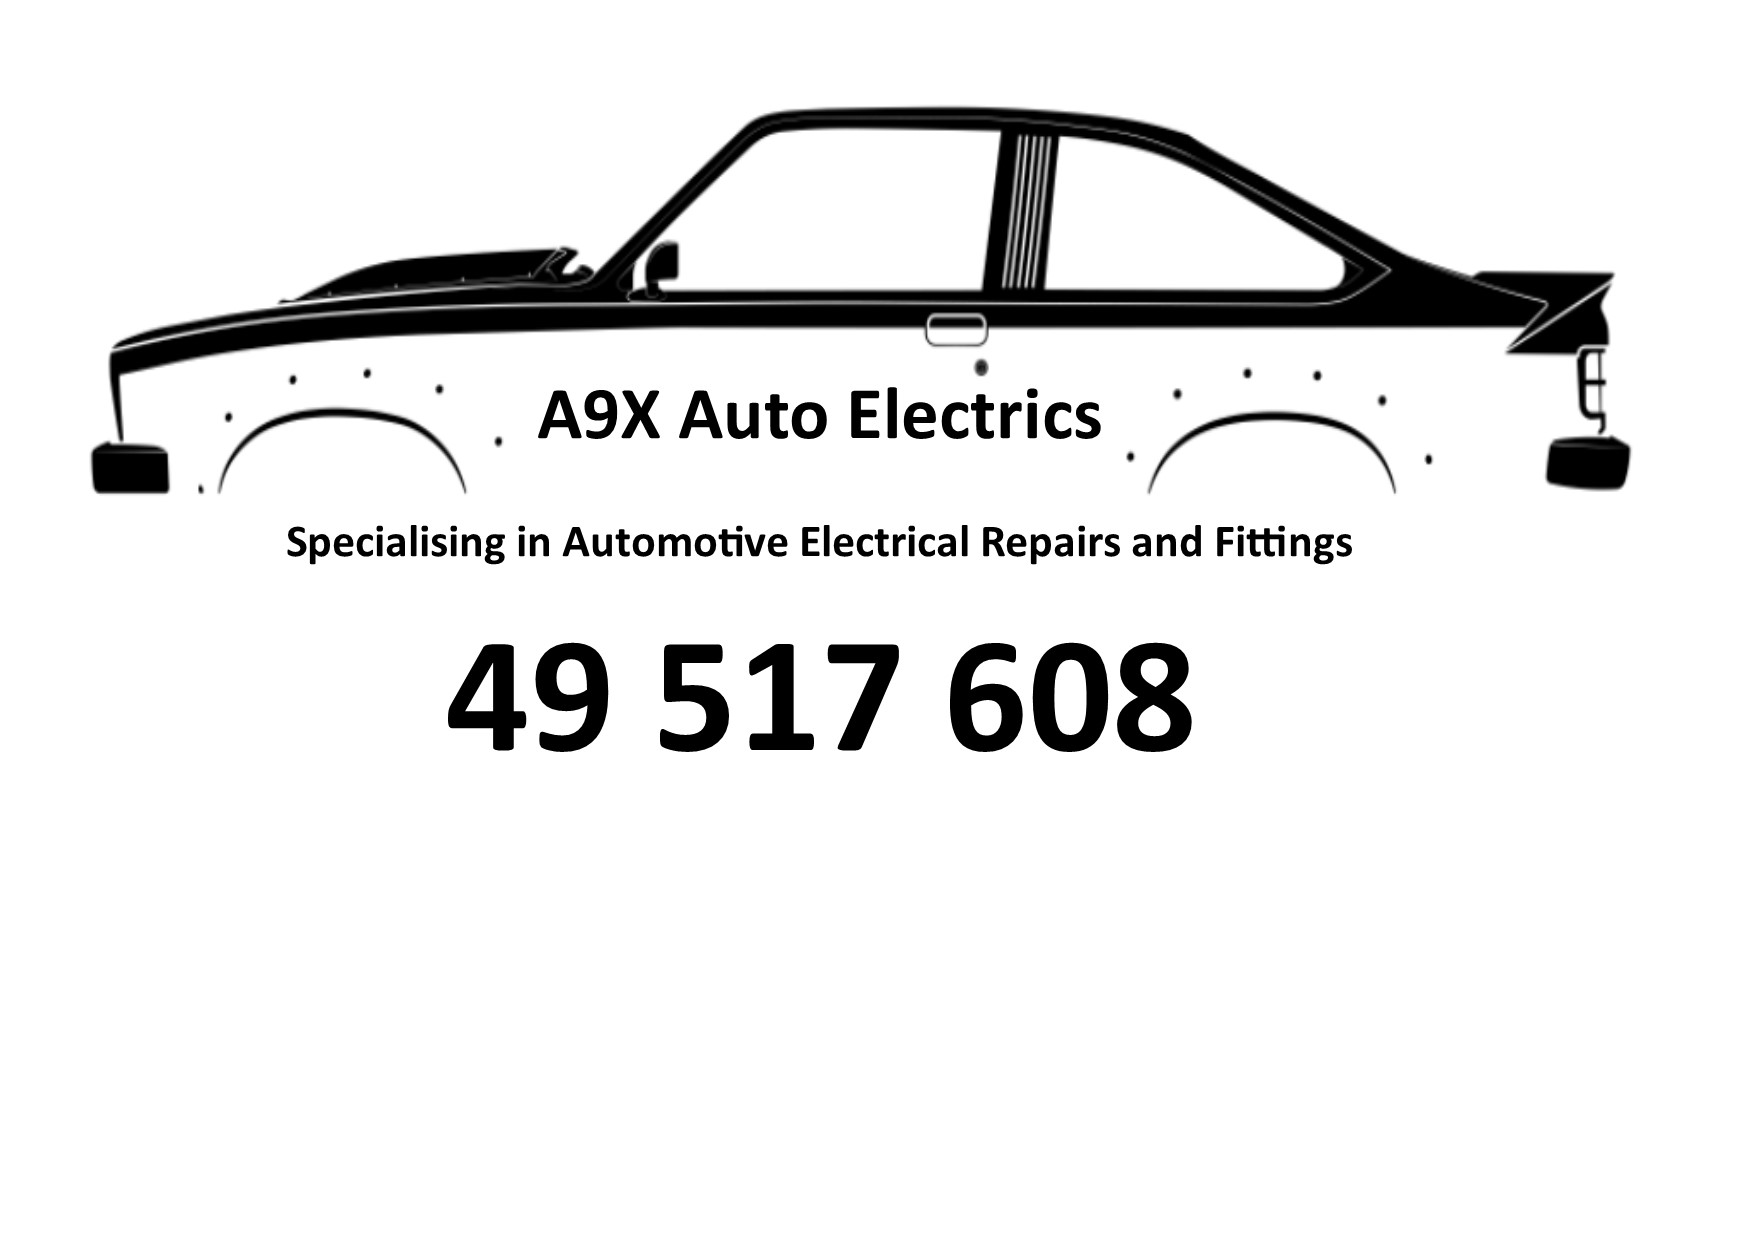 A9X Auto Electrics